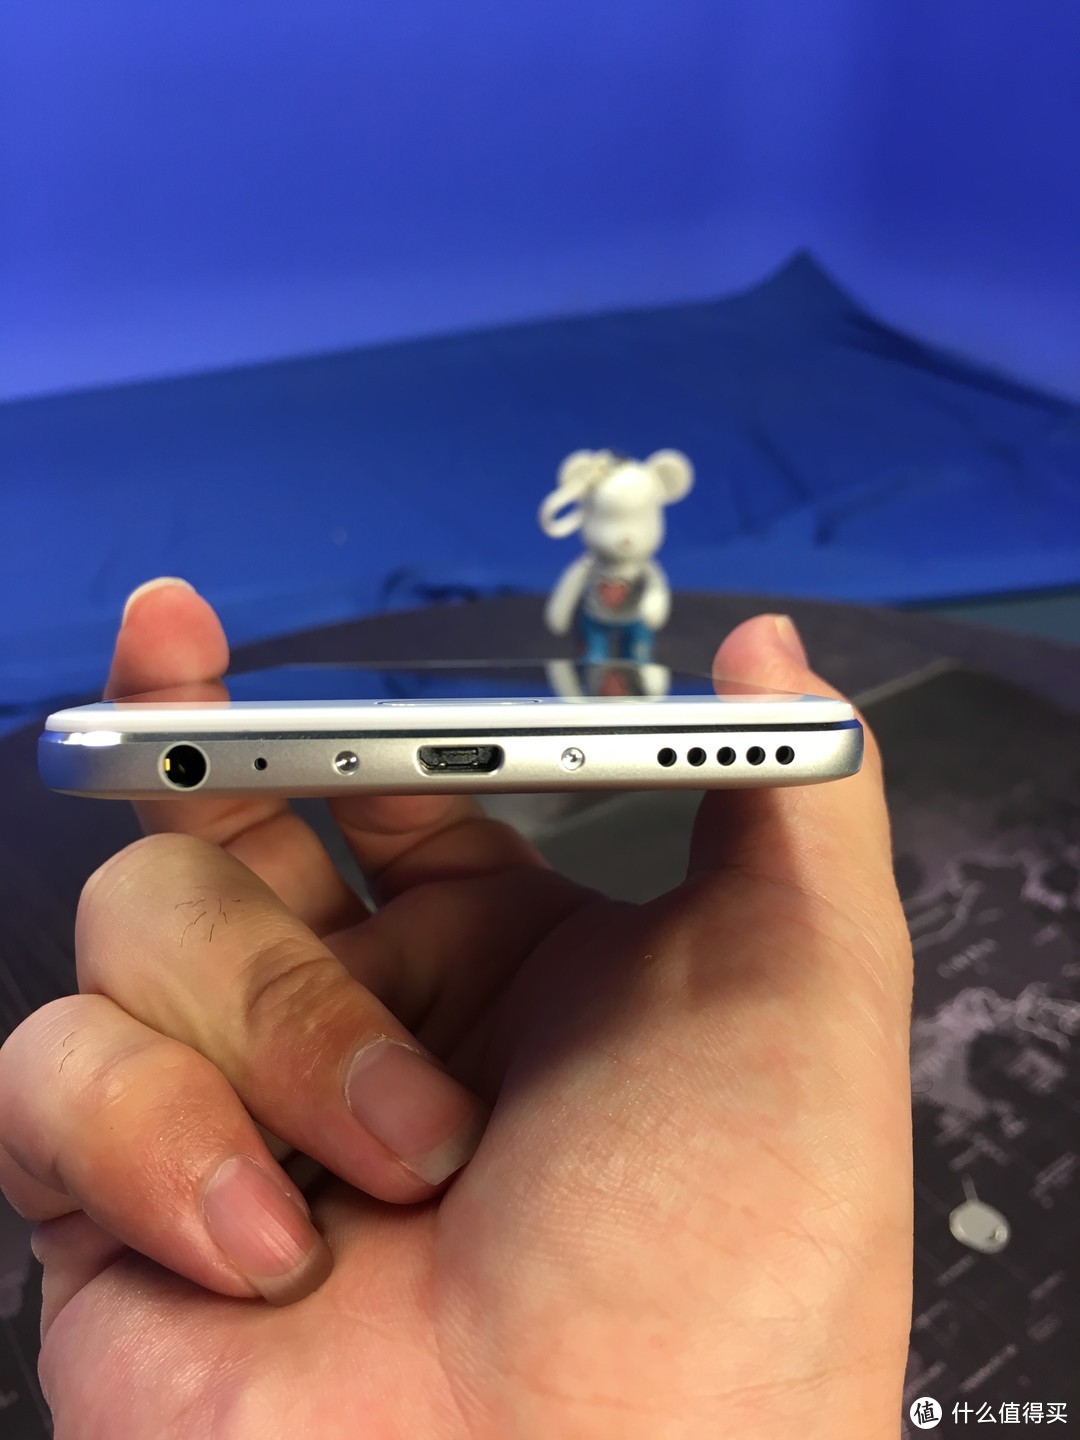 补上水桶的短板~千元机中的战斗机！不吹不黑的 MEIZU 魅蓝 Note6 智能手机实用向评测